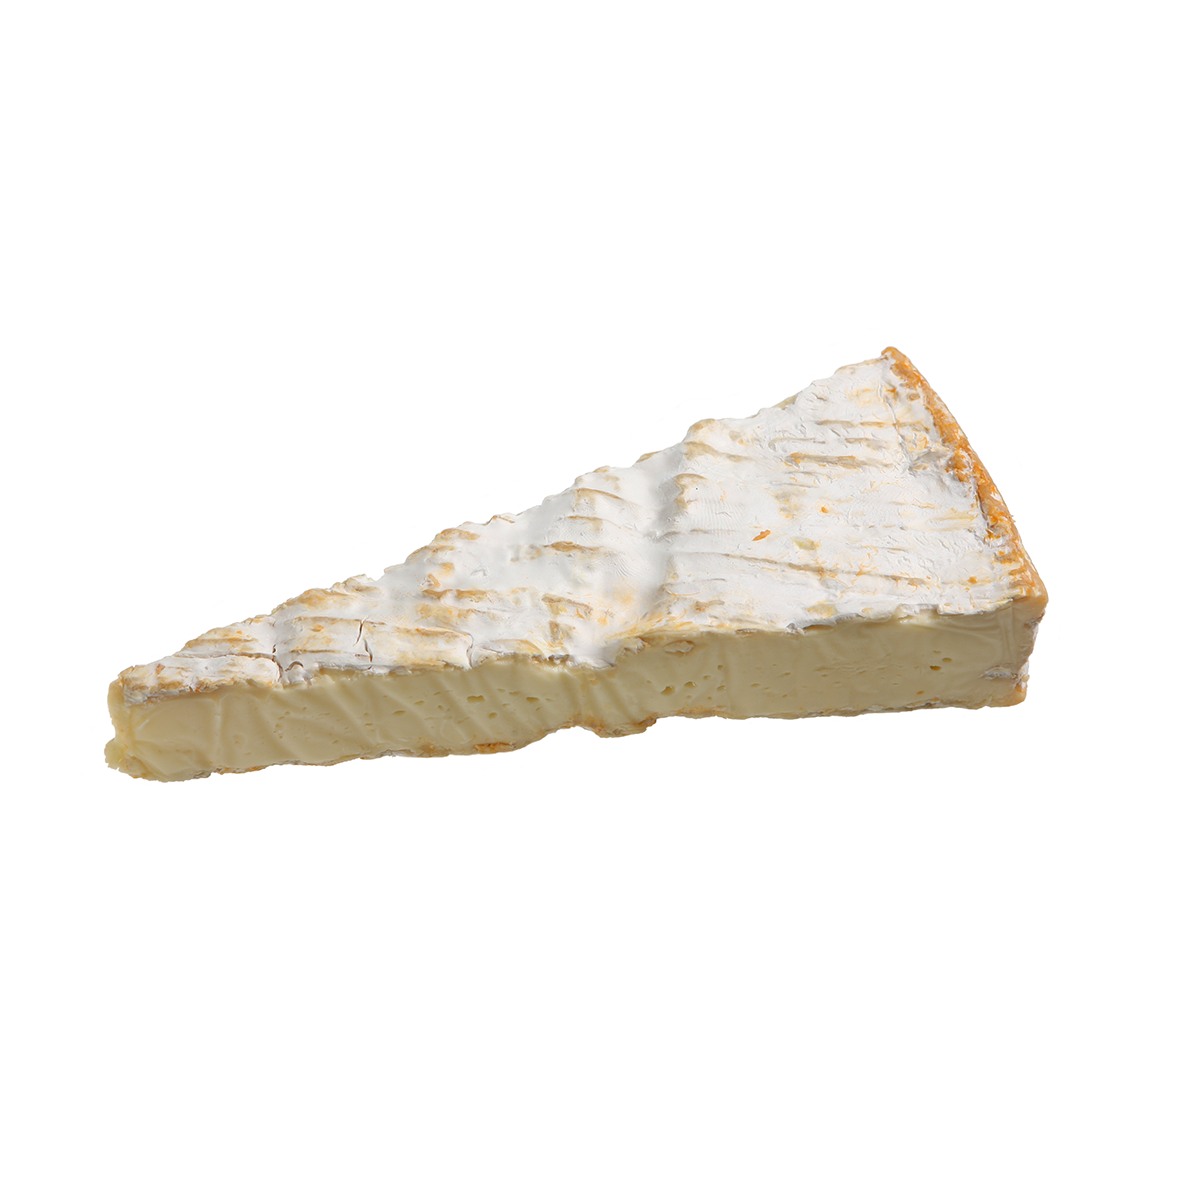 Président Cheese Triple Crème Brie